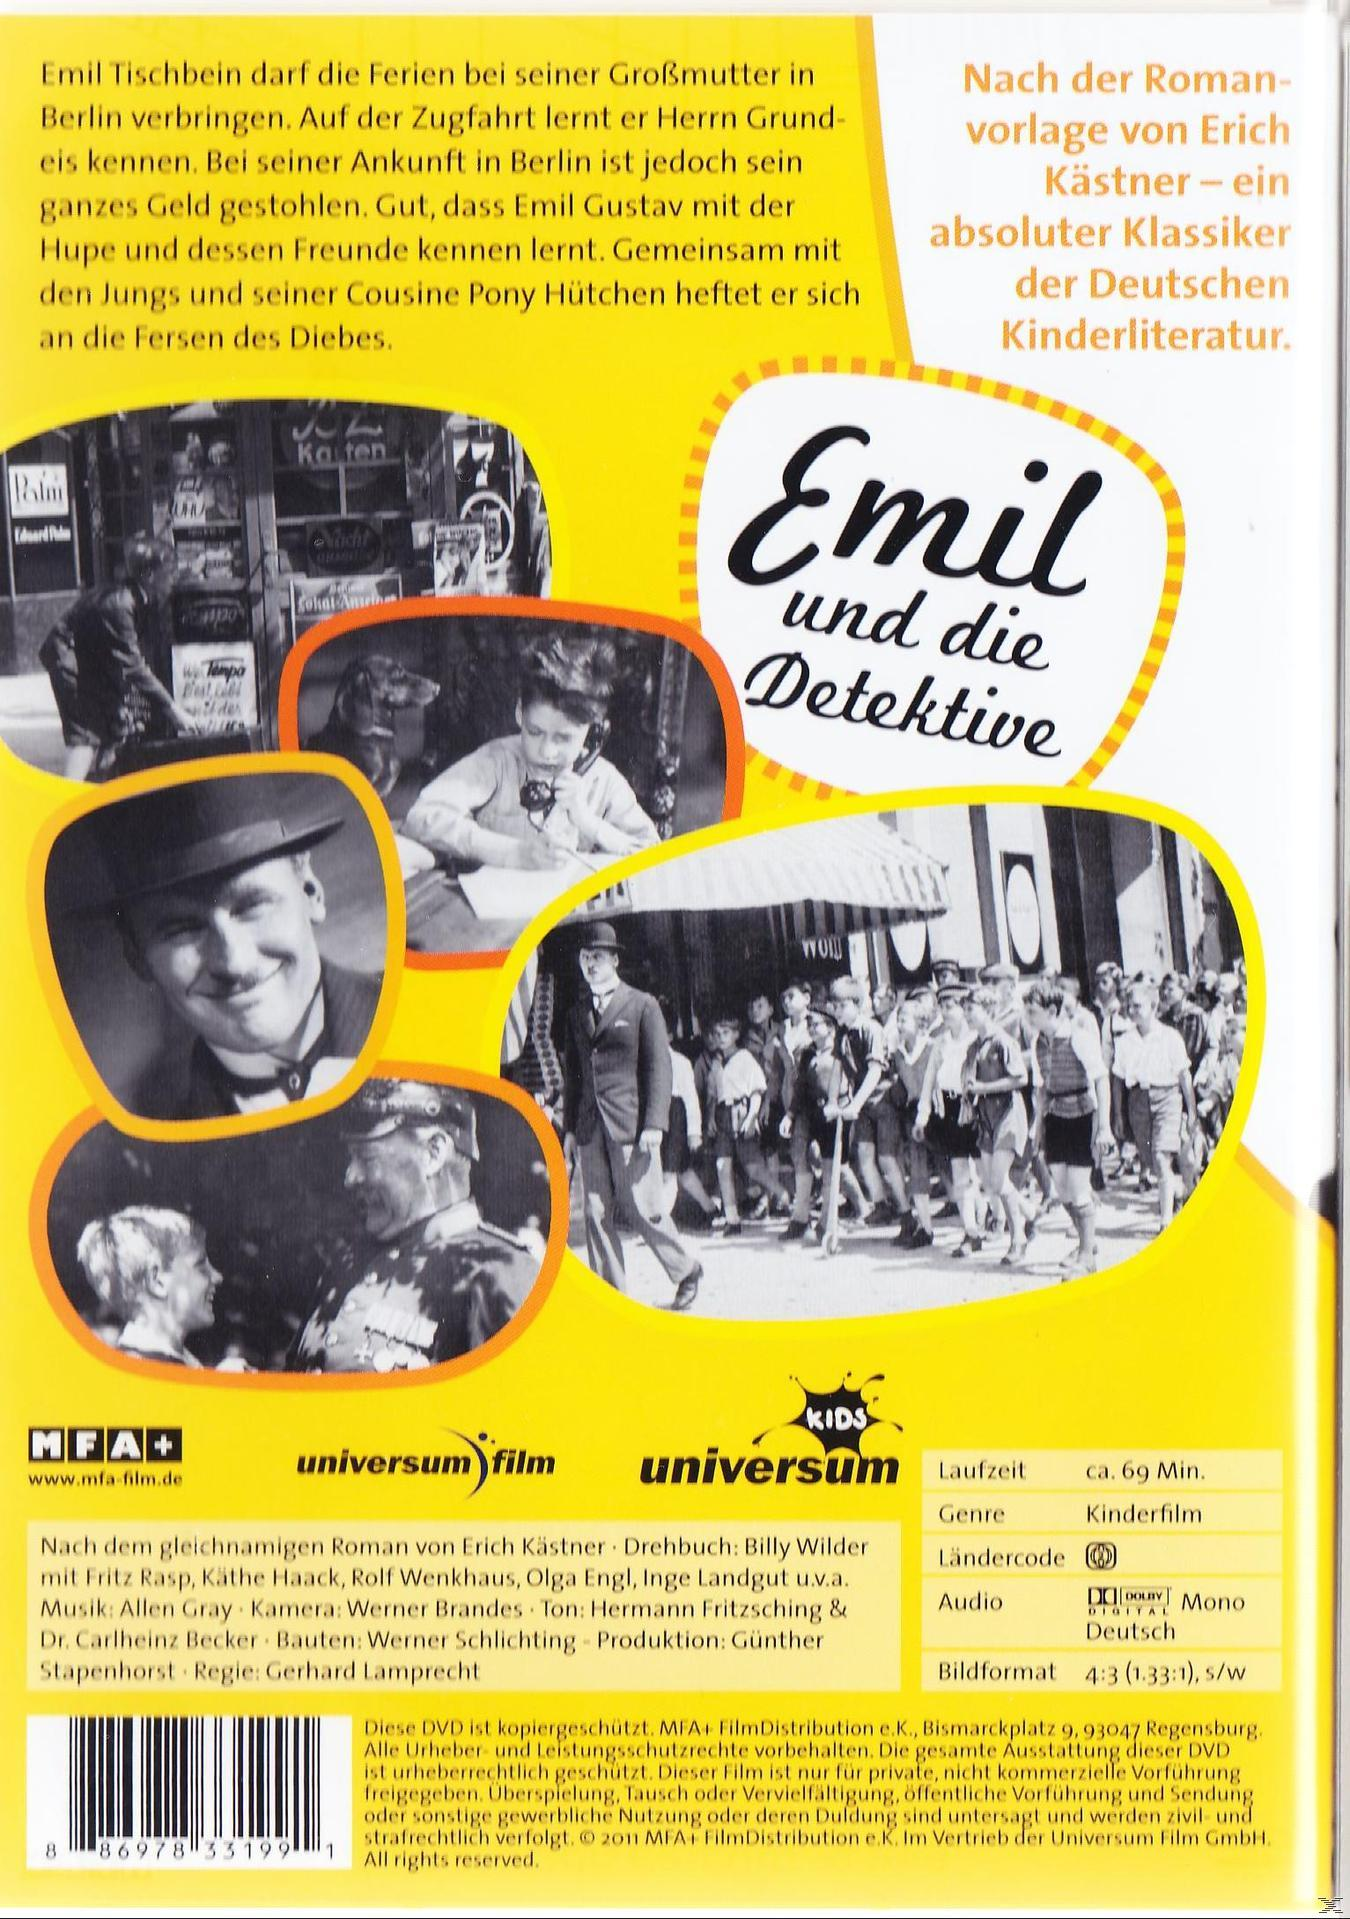 Emil Detektive und DVD die